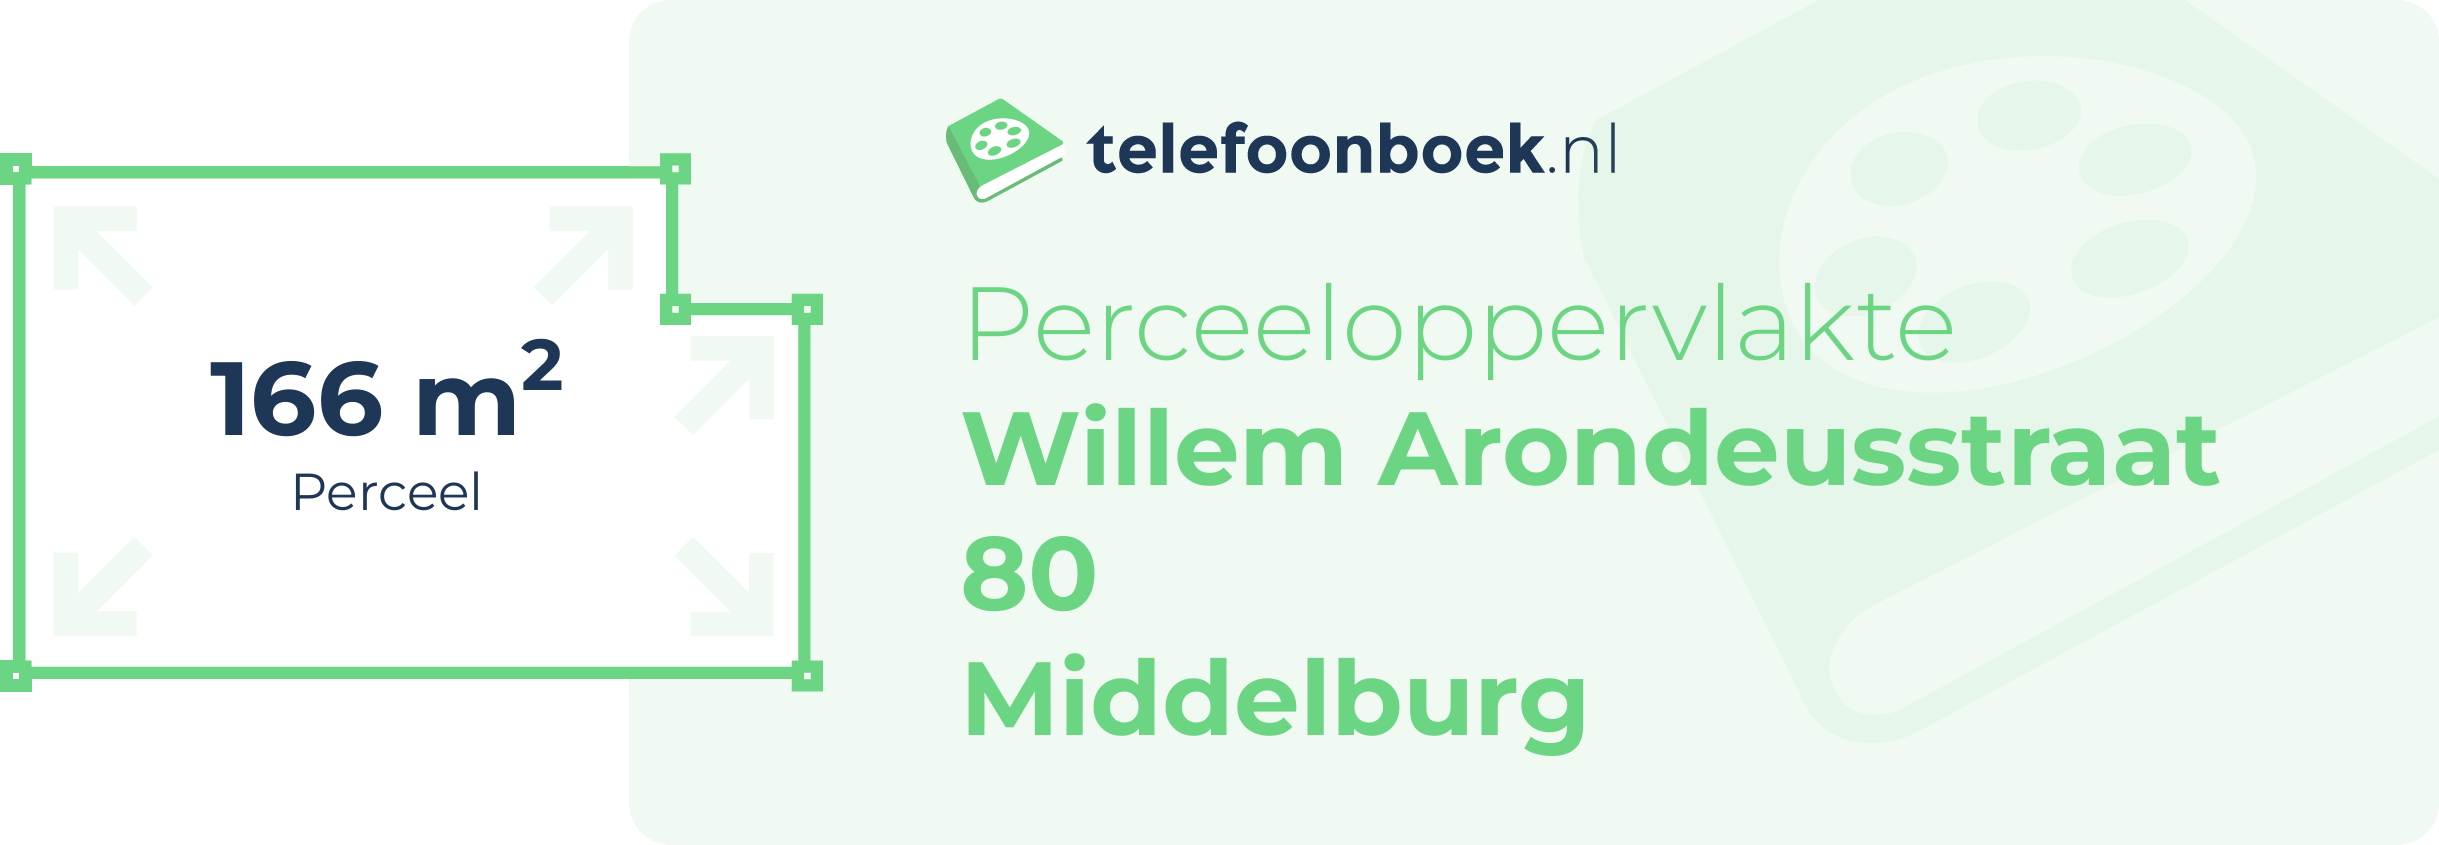 Perceeloppervlakte Willem Arondeusstraat 80 Middelburg